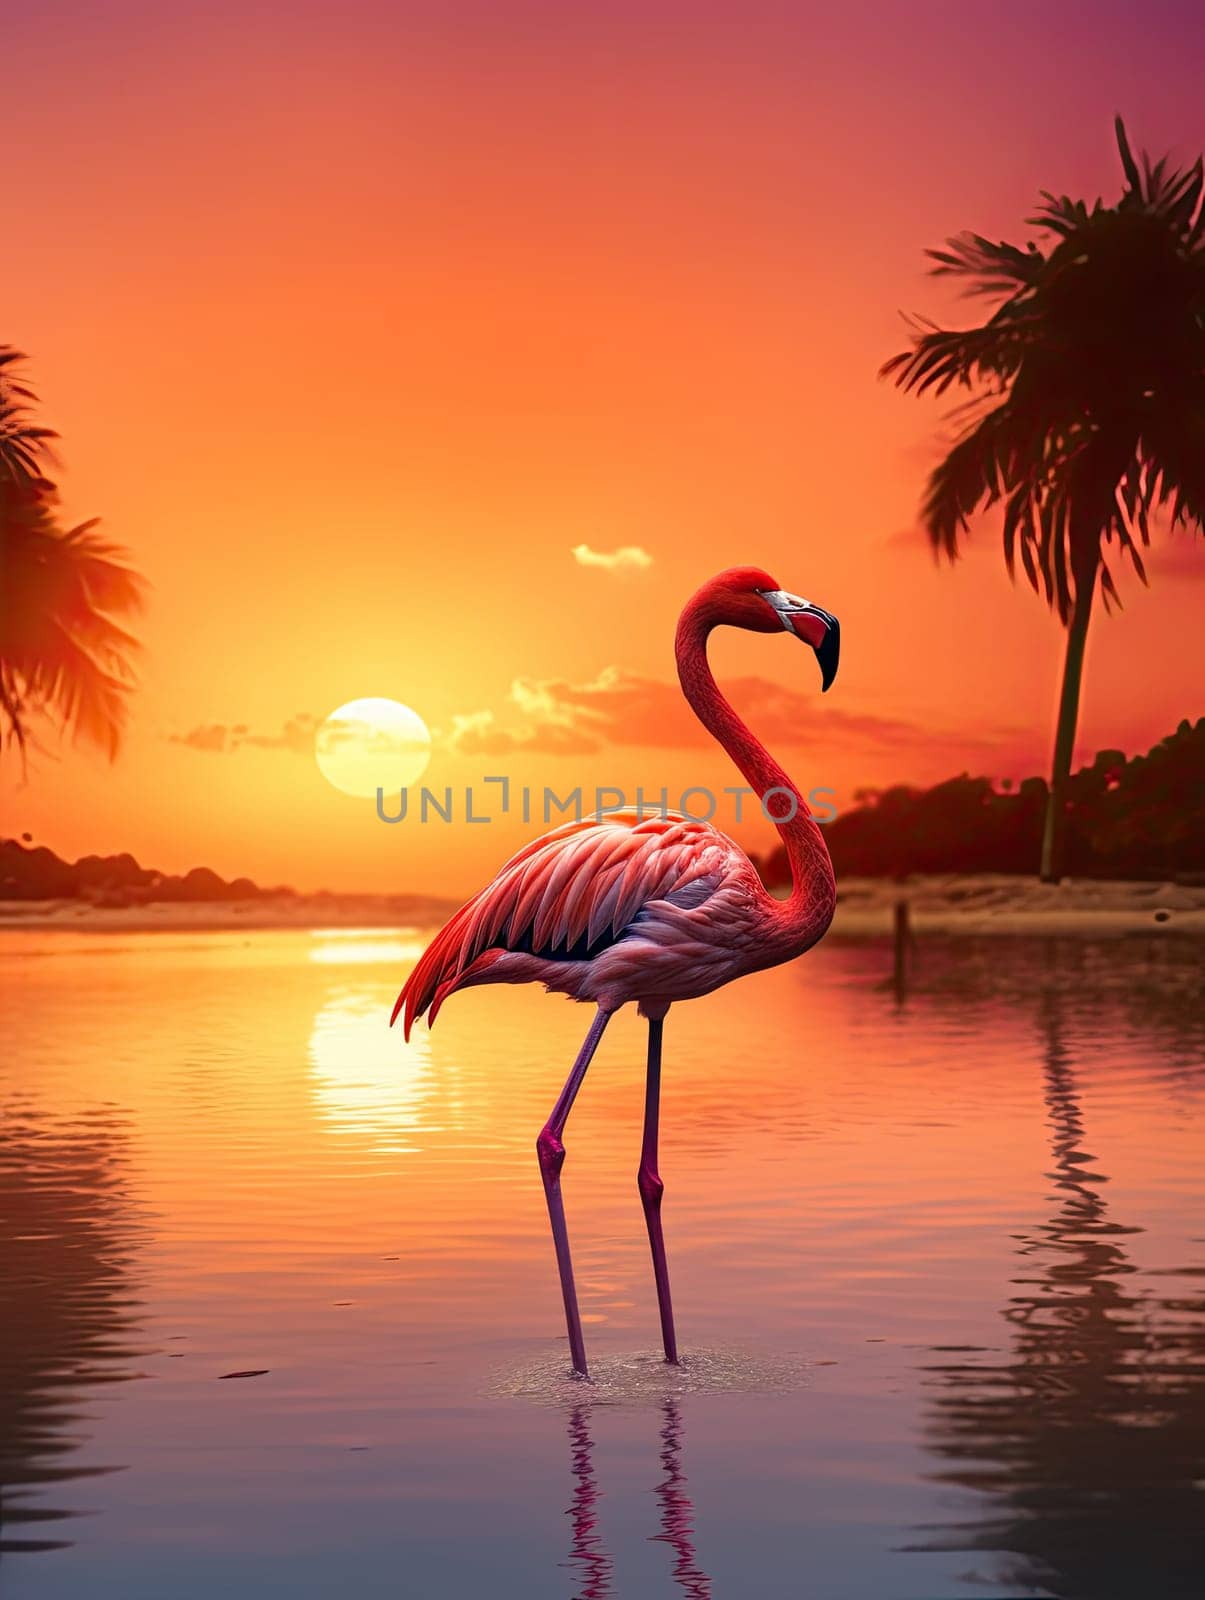 Beautiful pink flamingo in lake with reflection on beautiful sunset background. AI by AnatoliiFoto